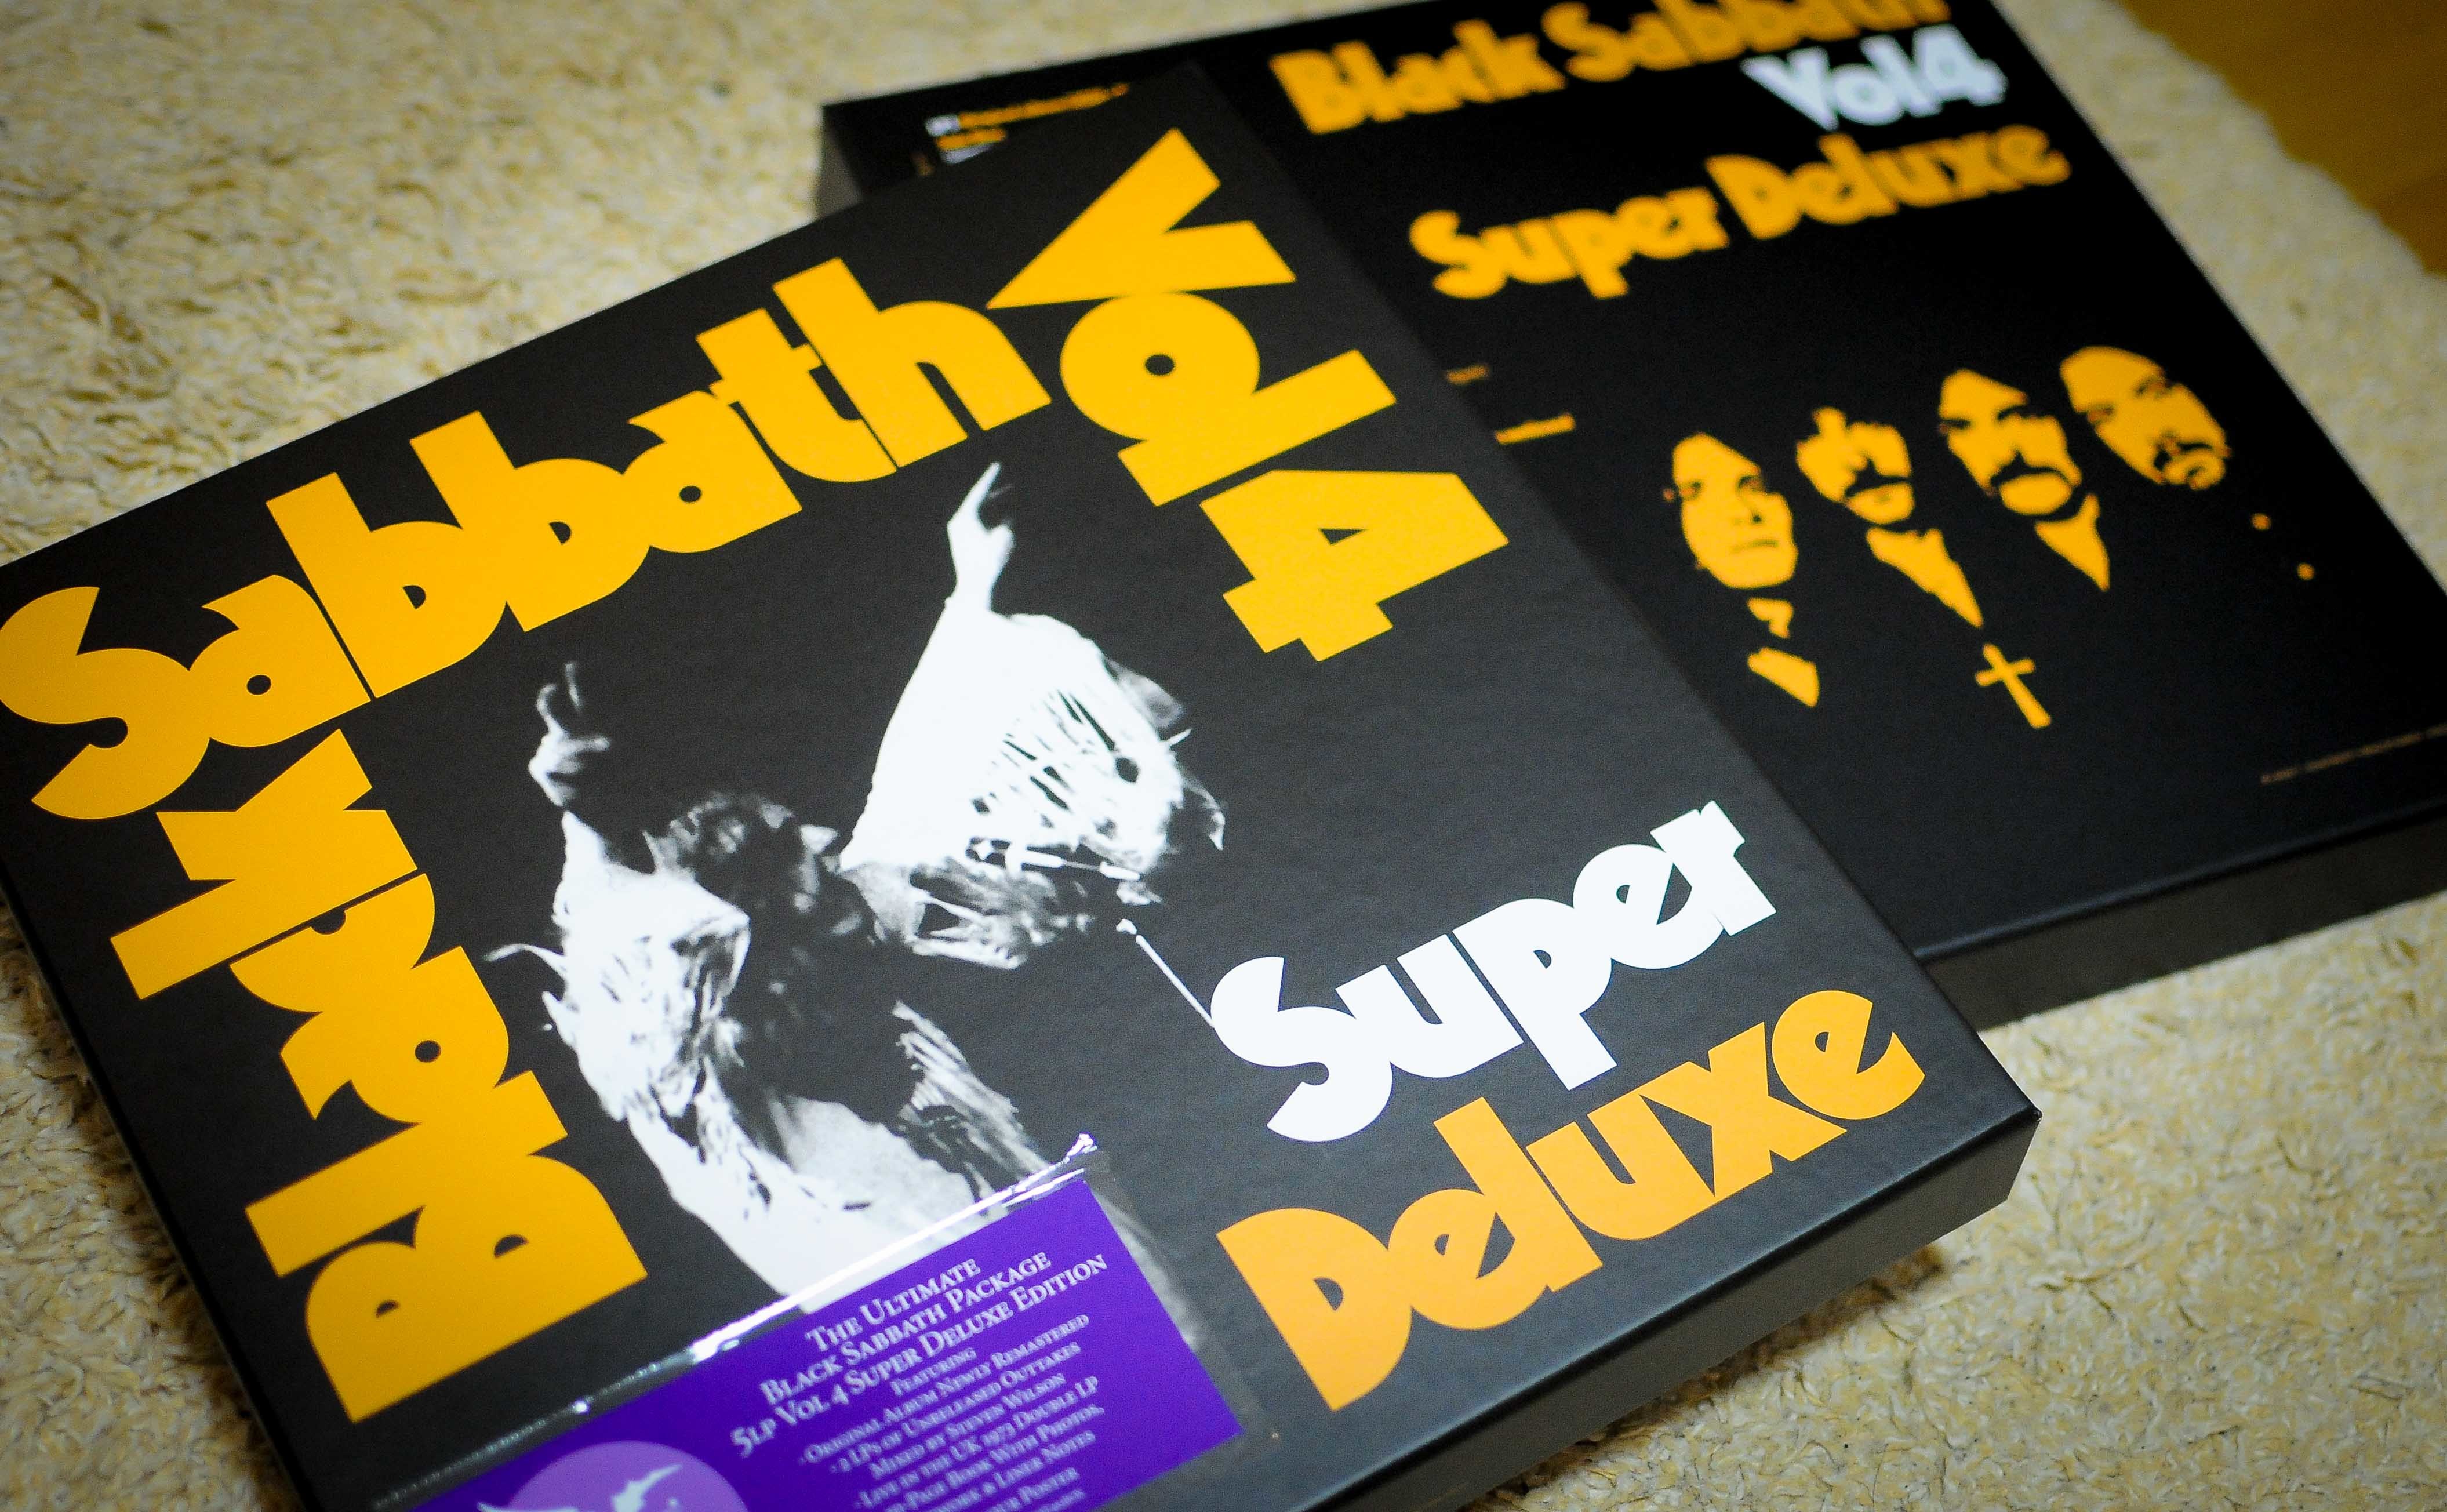 Black Sabbath 『Vol.4』 Super Deluxe Edition開封 - Black Sabbath